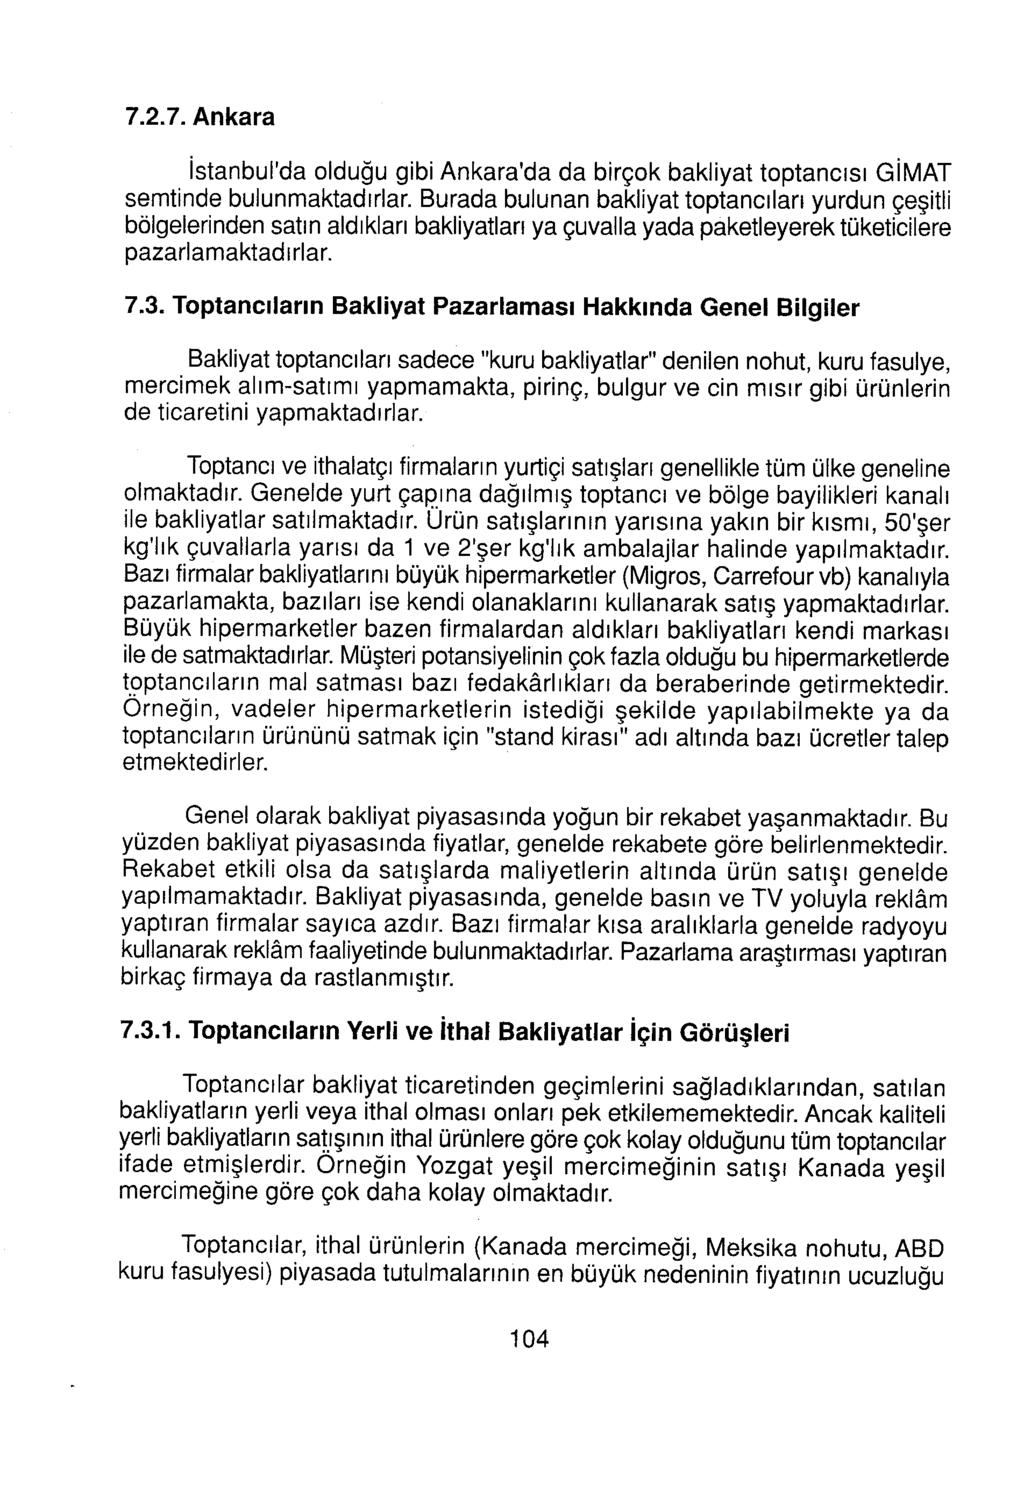 7.2.7. Ankara İstanbul'da olduğu gibi Ankara'da da birçok bakliyat toptancısı GİMAT semtinde bulunmaktadırlar.